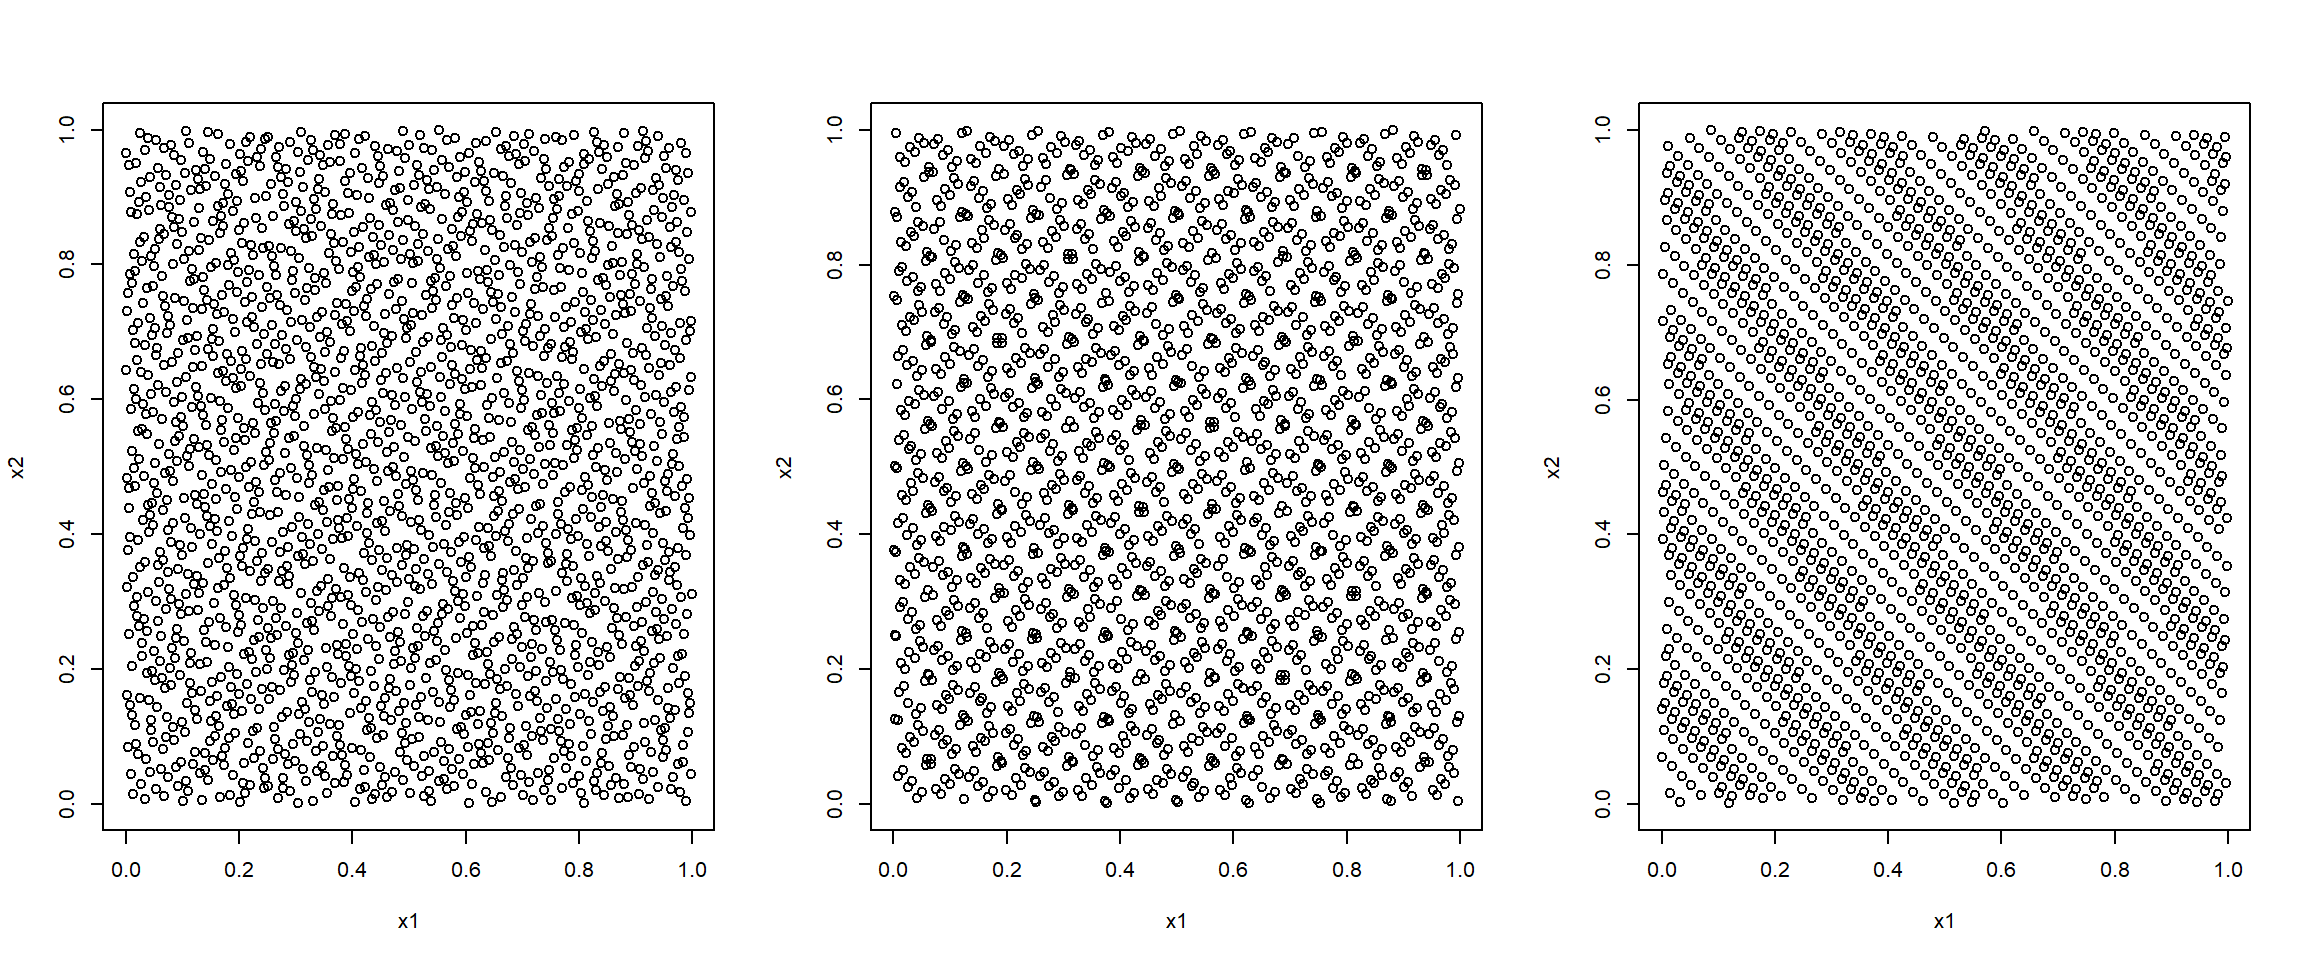 Secuencias cuasi-aleatorias bidimensionales obtenidas con los métodos de Halton (izquierda), Sobol (centro) y Torus (derecha).